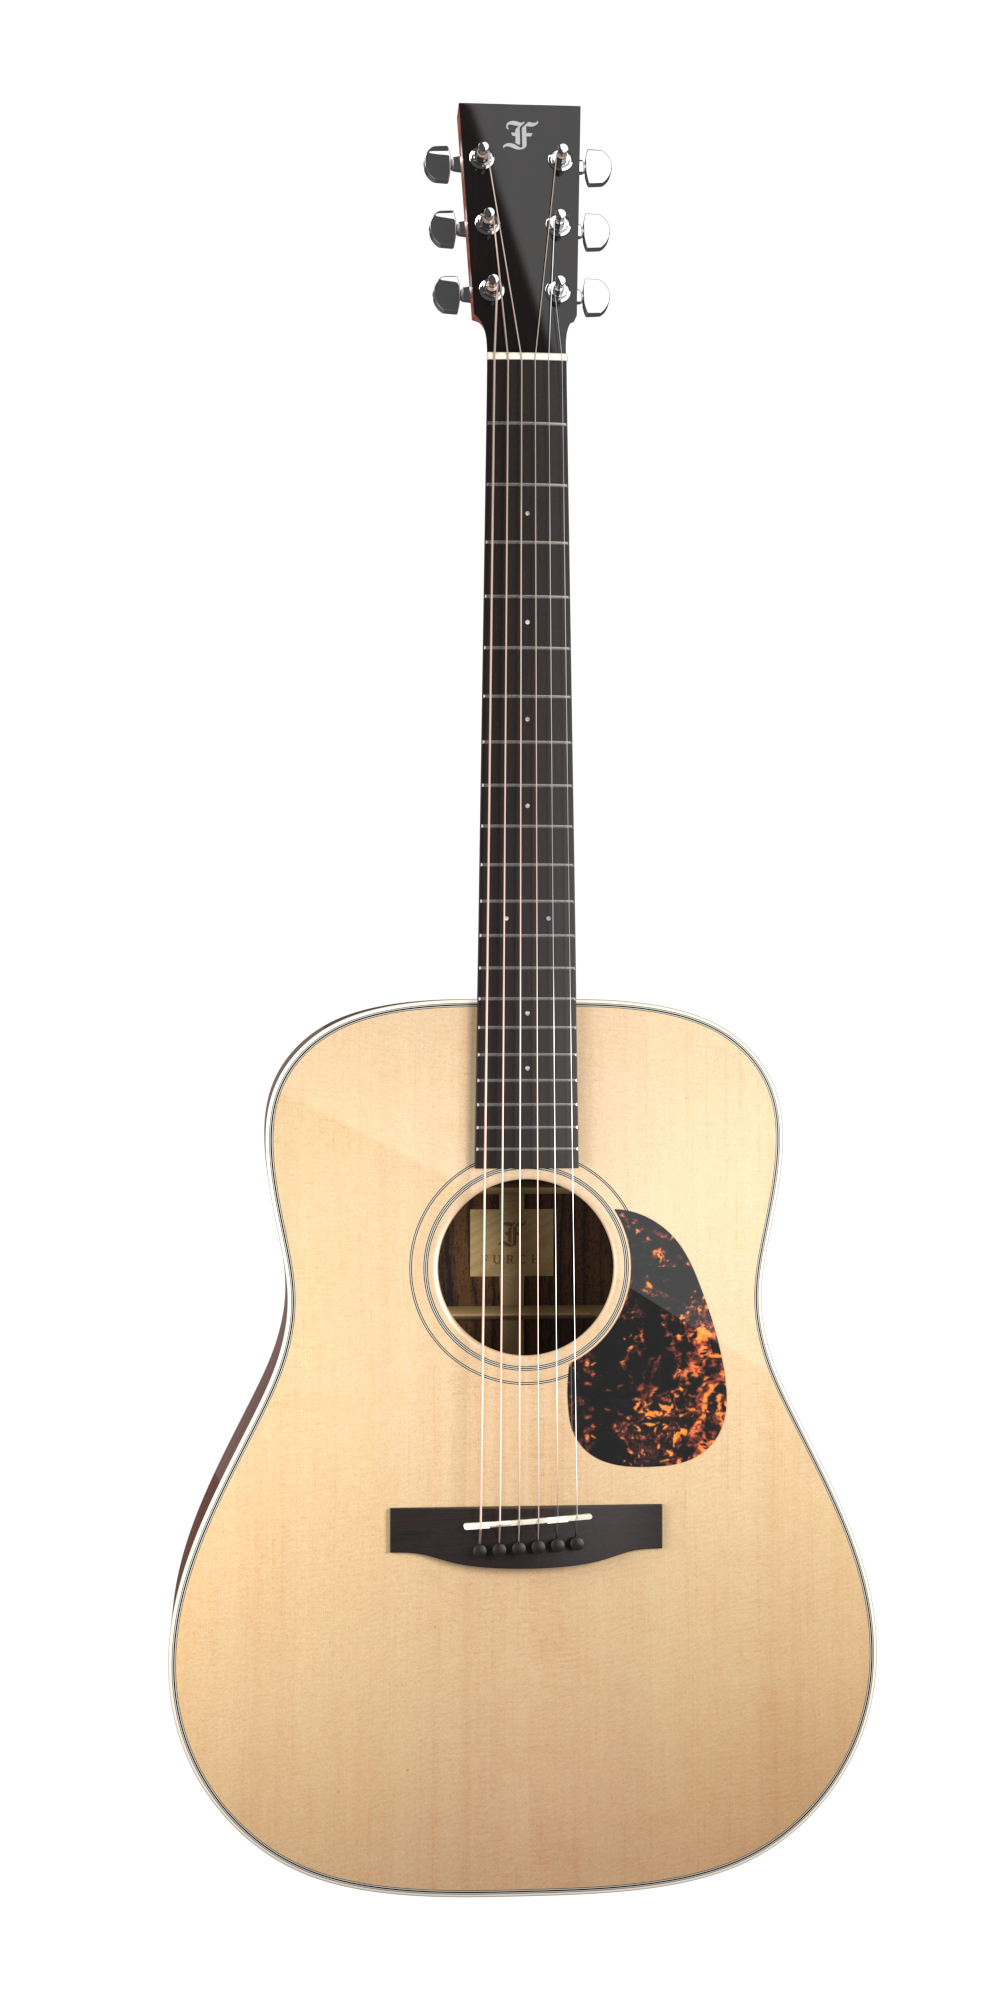 Køb Furch Vintage 1 D-SR - Western guitar med L.R.Baggs EAS/VTC Pickup og Hiscox hardcase - Pris 14495.00 kr.